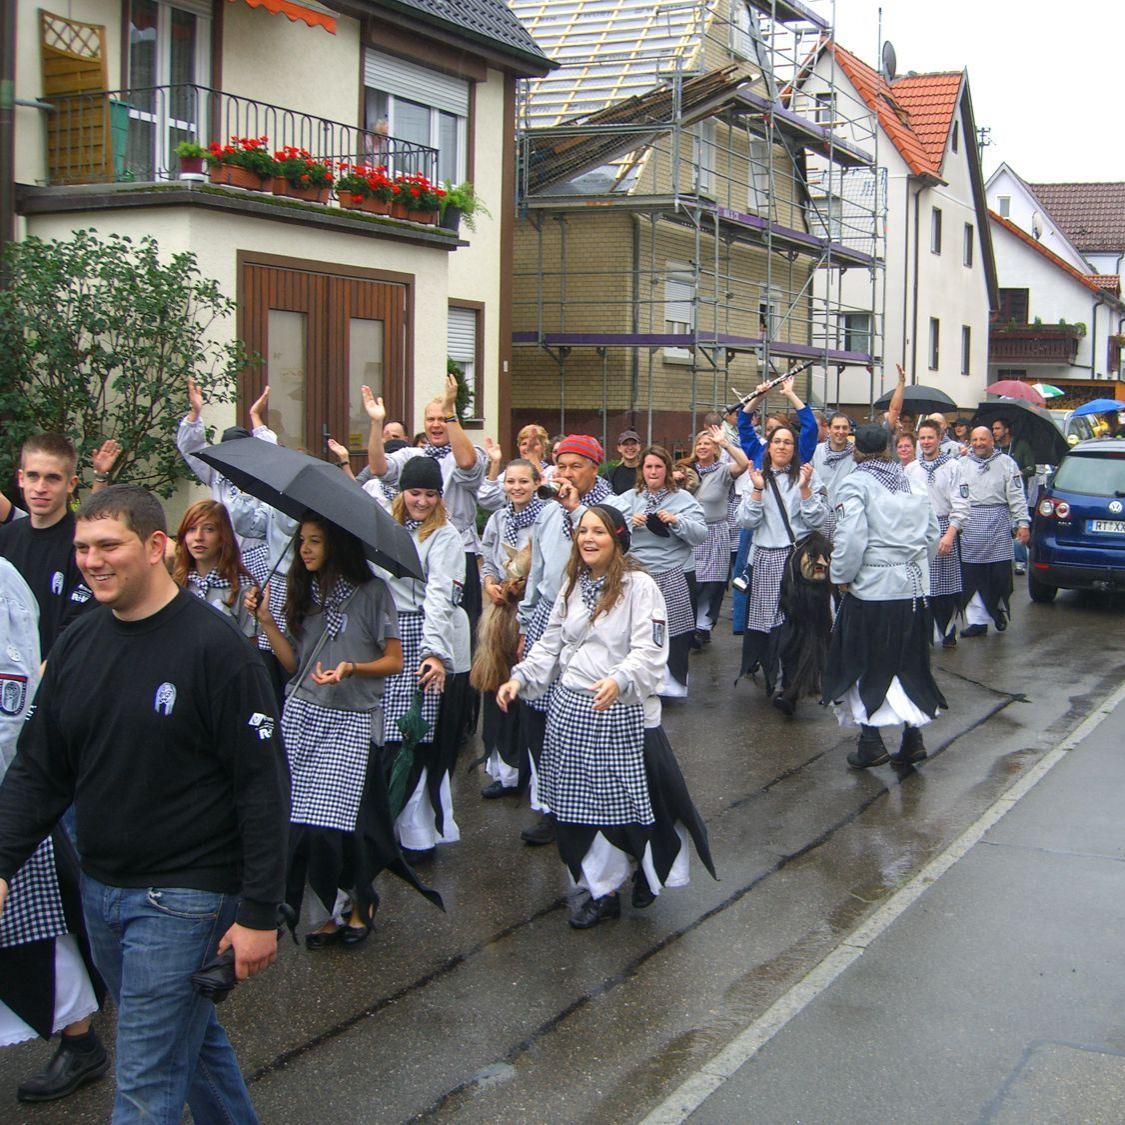 2011: Festzug zum 100jährigen bestehen des Musikvereins (Quelle: Dirk Glück)